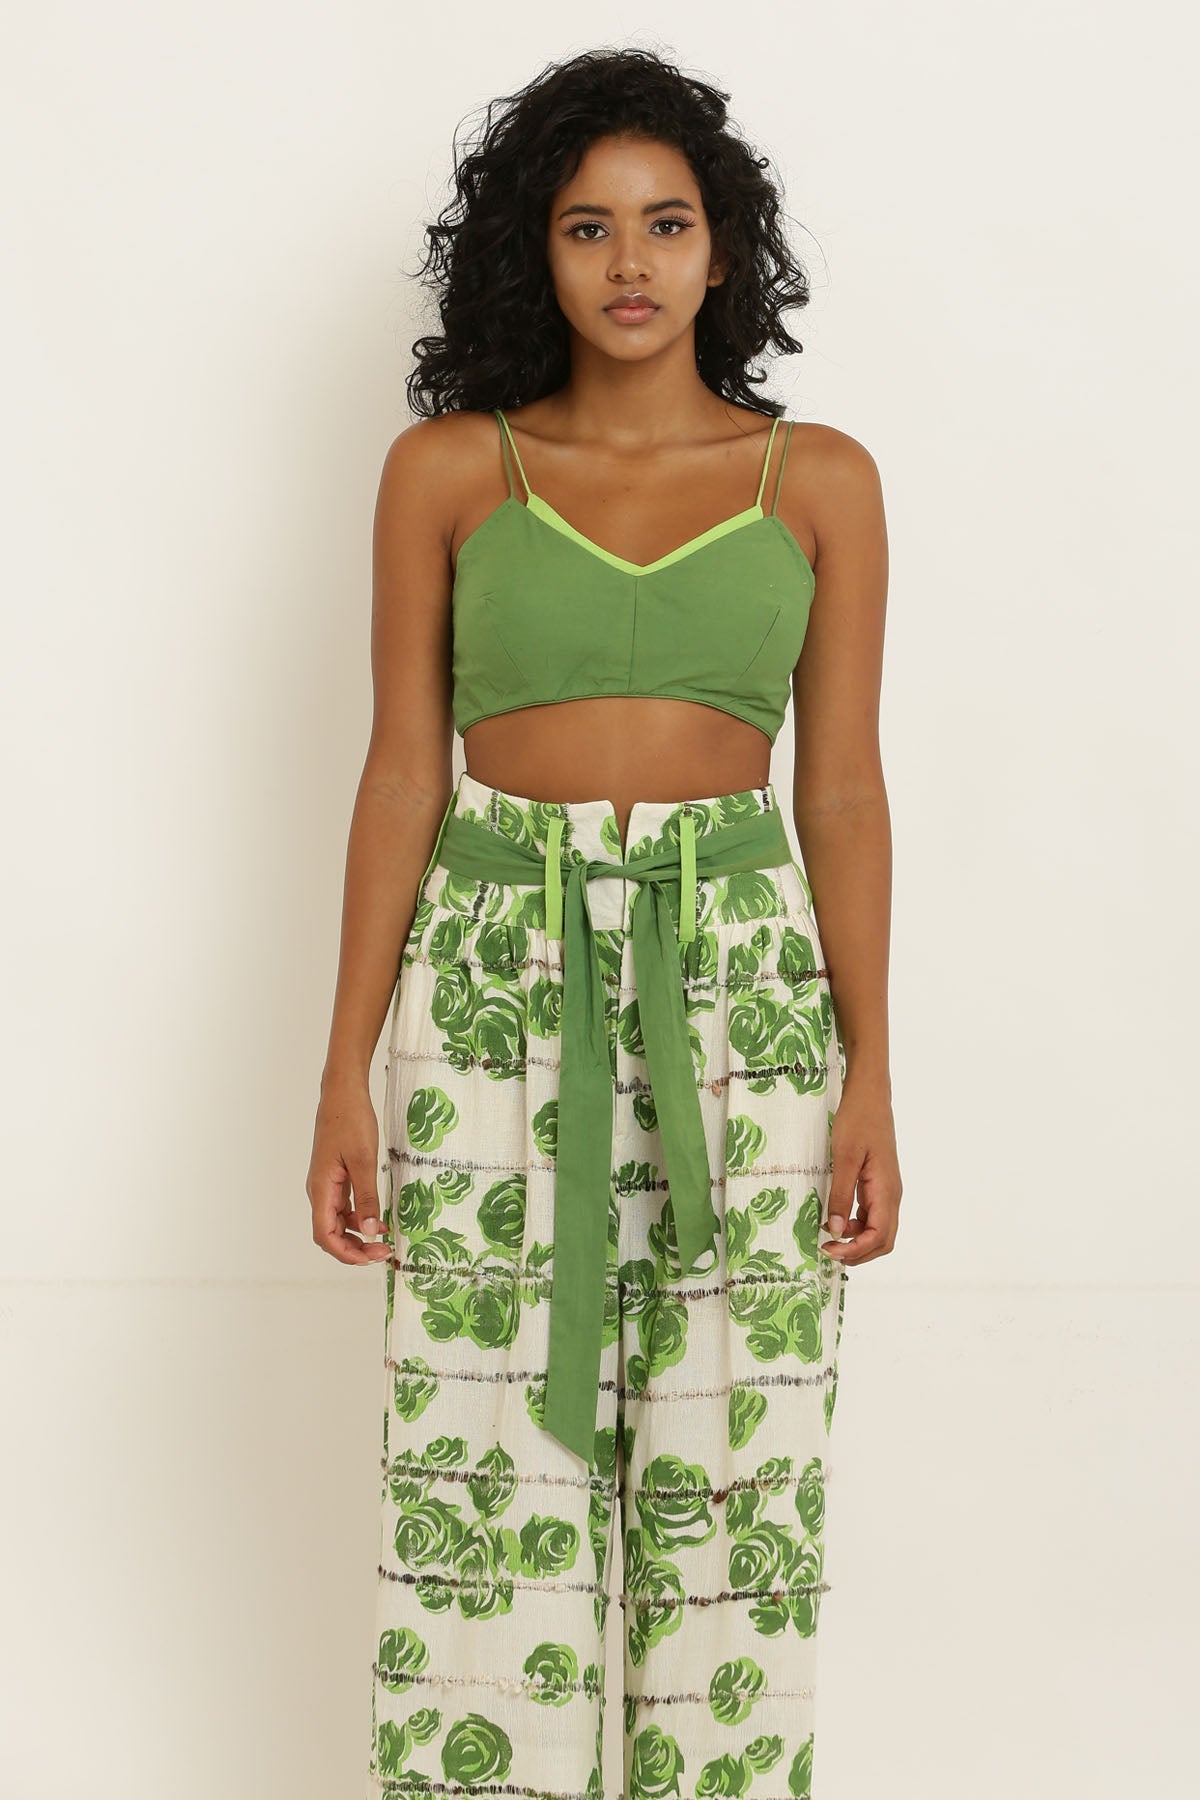 Designer Kusmi Verdant Oasis: Supportive Green Bralette For Women at ScrollnShops